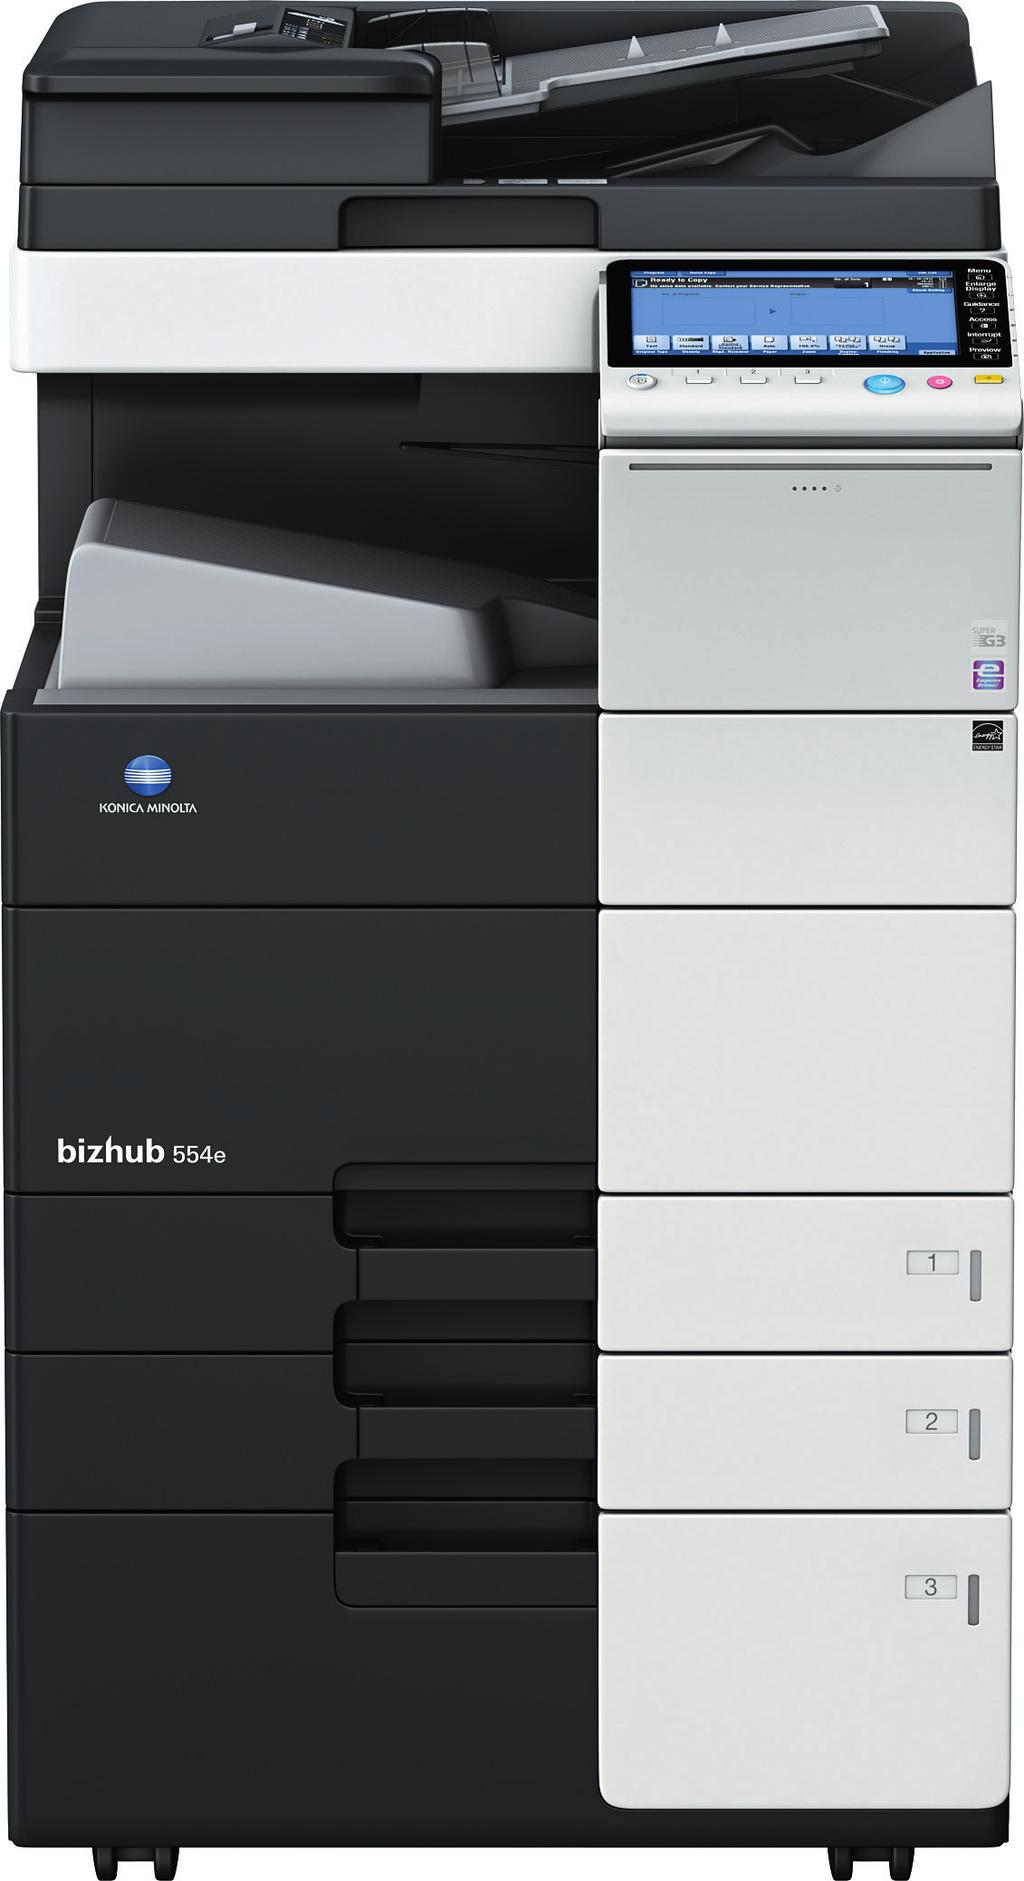 Bizhub 554e A61D041 Copiadora - Impresora - Escaner a Full color COSTO POR COPIA Bizhub 554e Descripcion Duracion Costo Total en $ Toner Black TN-513 24400 119.90 0.